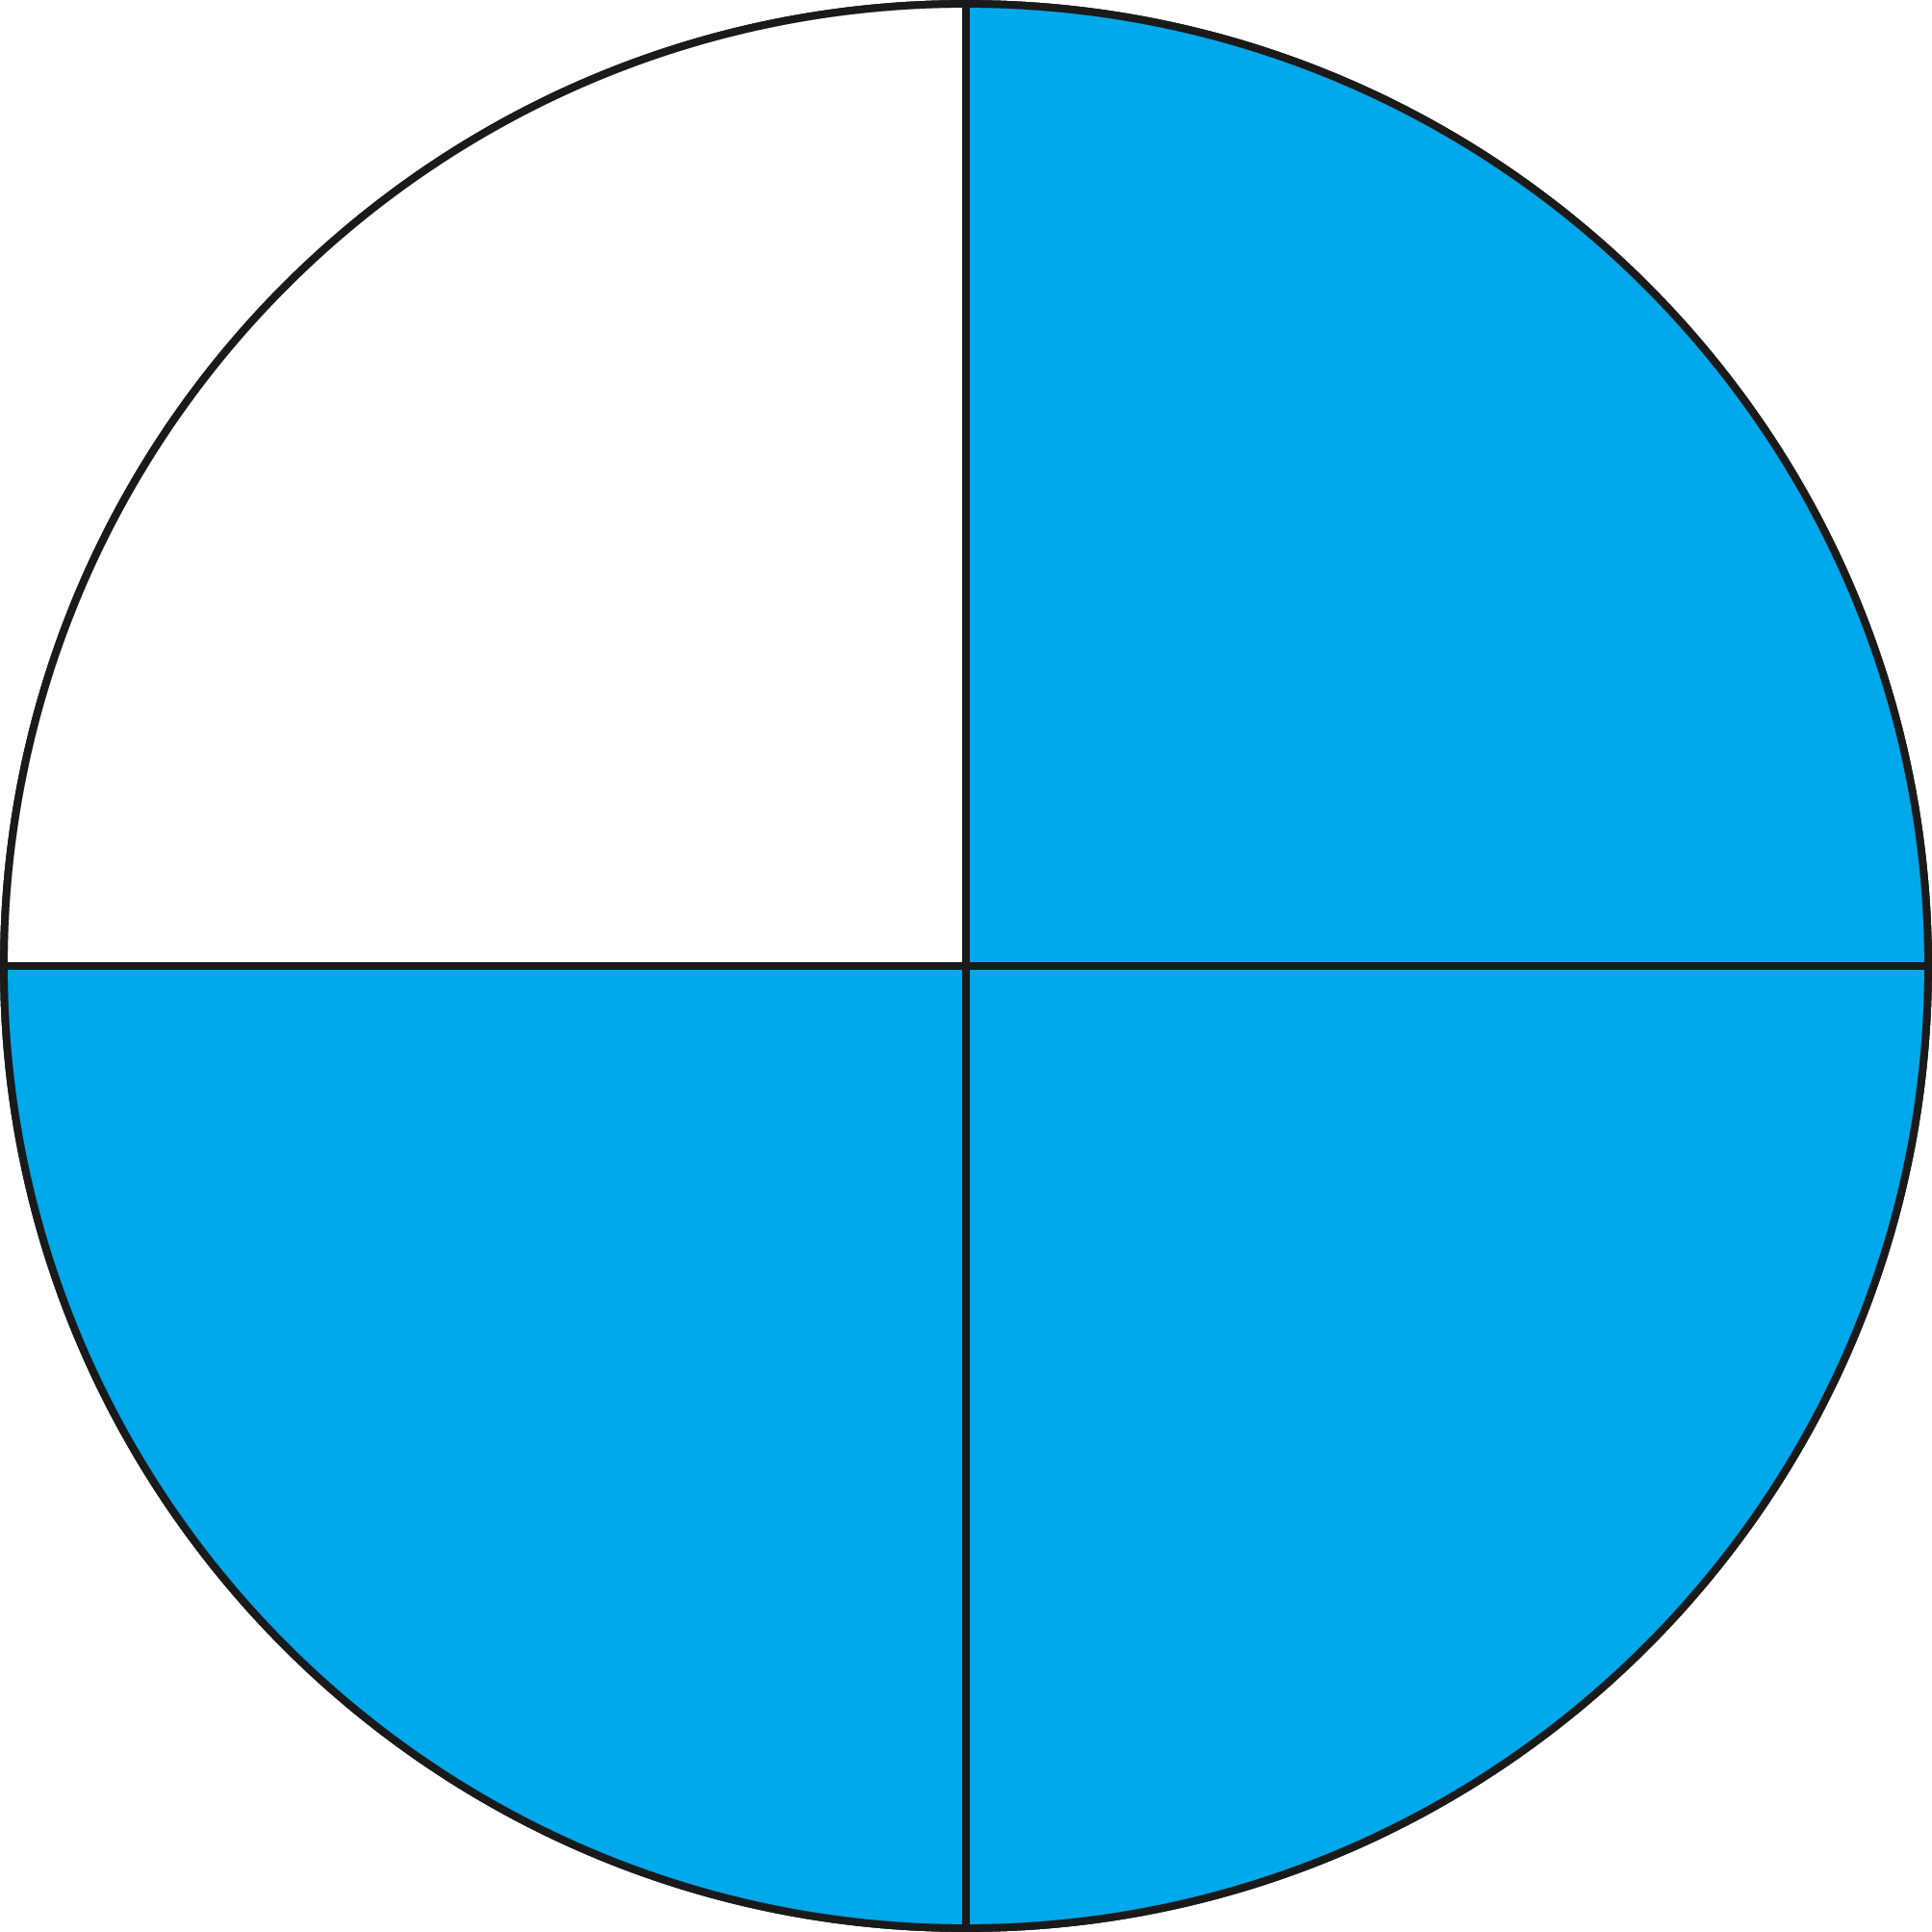 На четыре части между. Круг поделенный на 4 части. Круг разделенный на части. Круг разделенный на две части. Круг поделенный на 2 части.